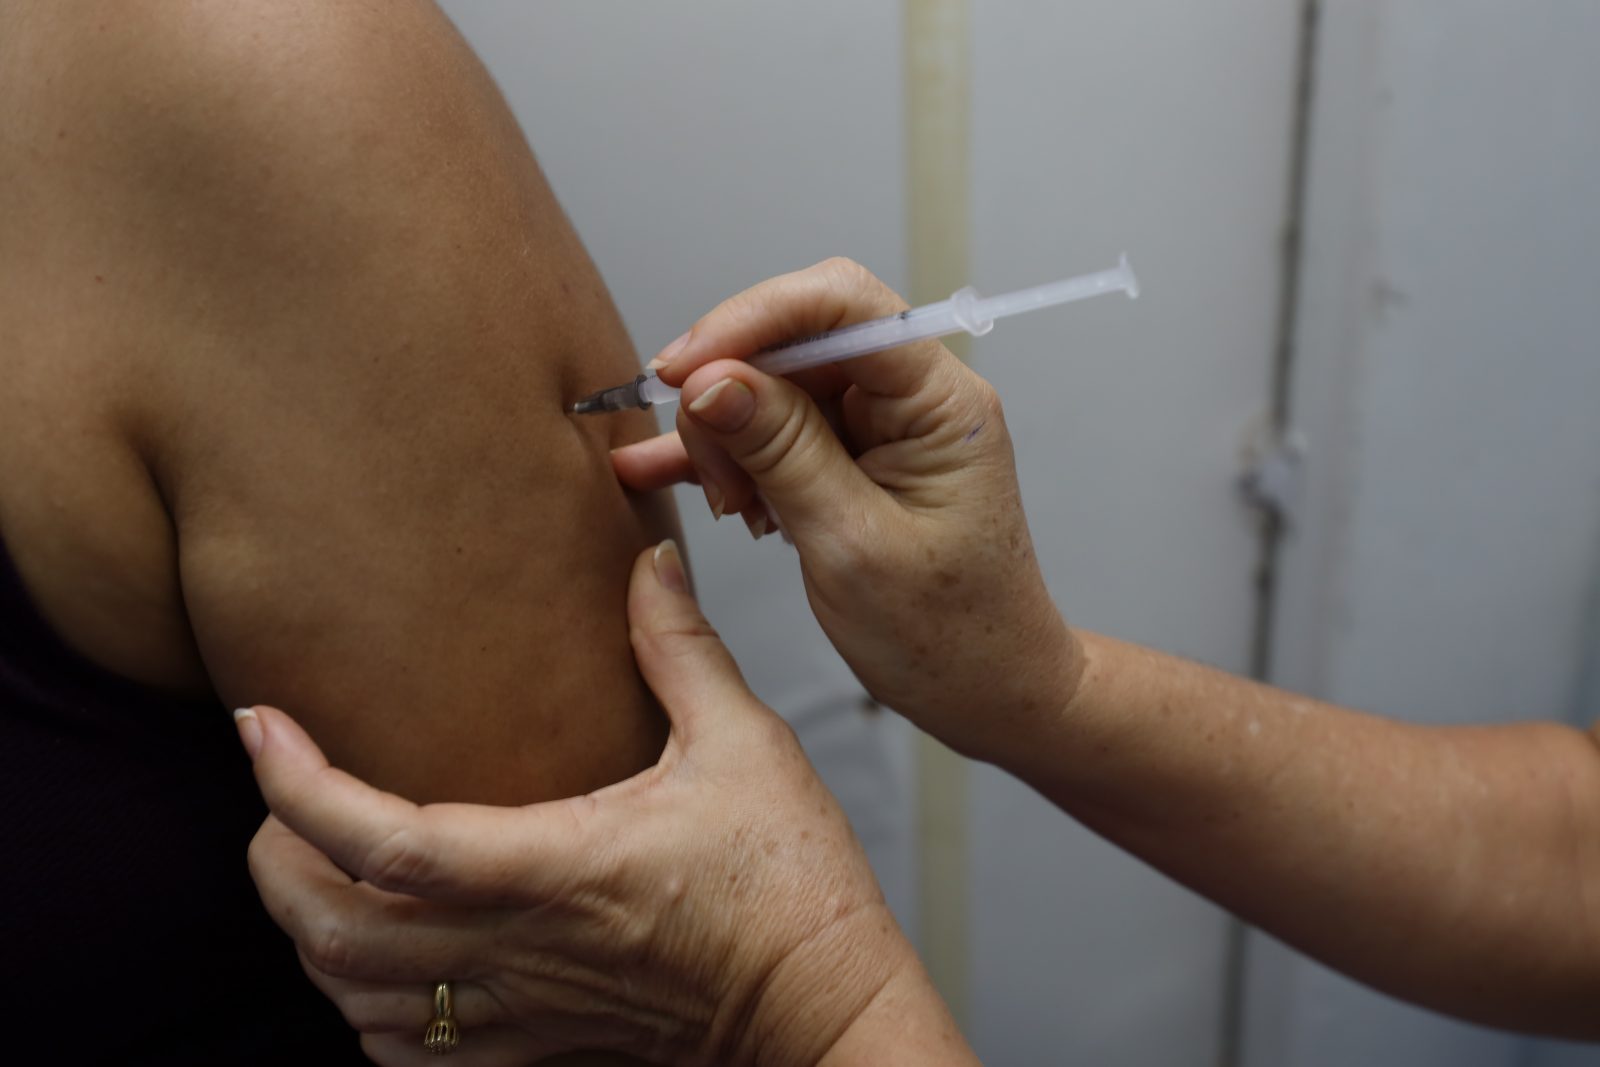 Pessoa recebendo dose de vacina | Foto: Bruno Carachesti / Agência Pará